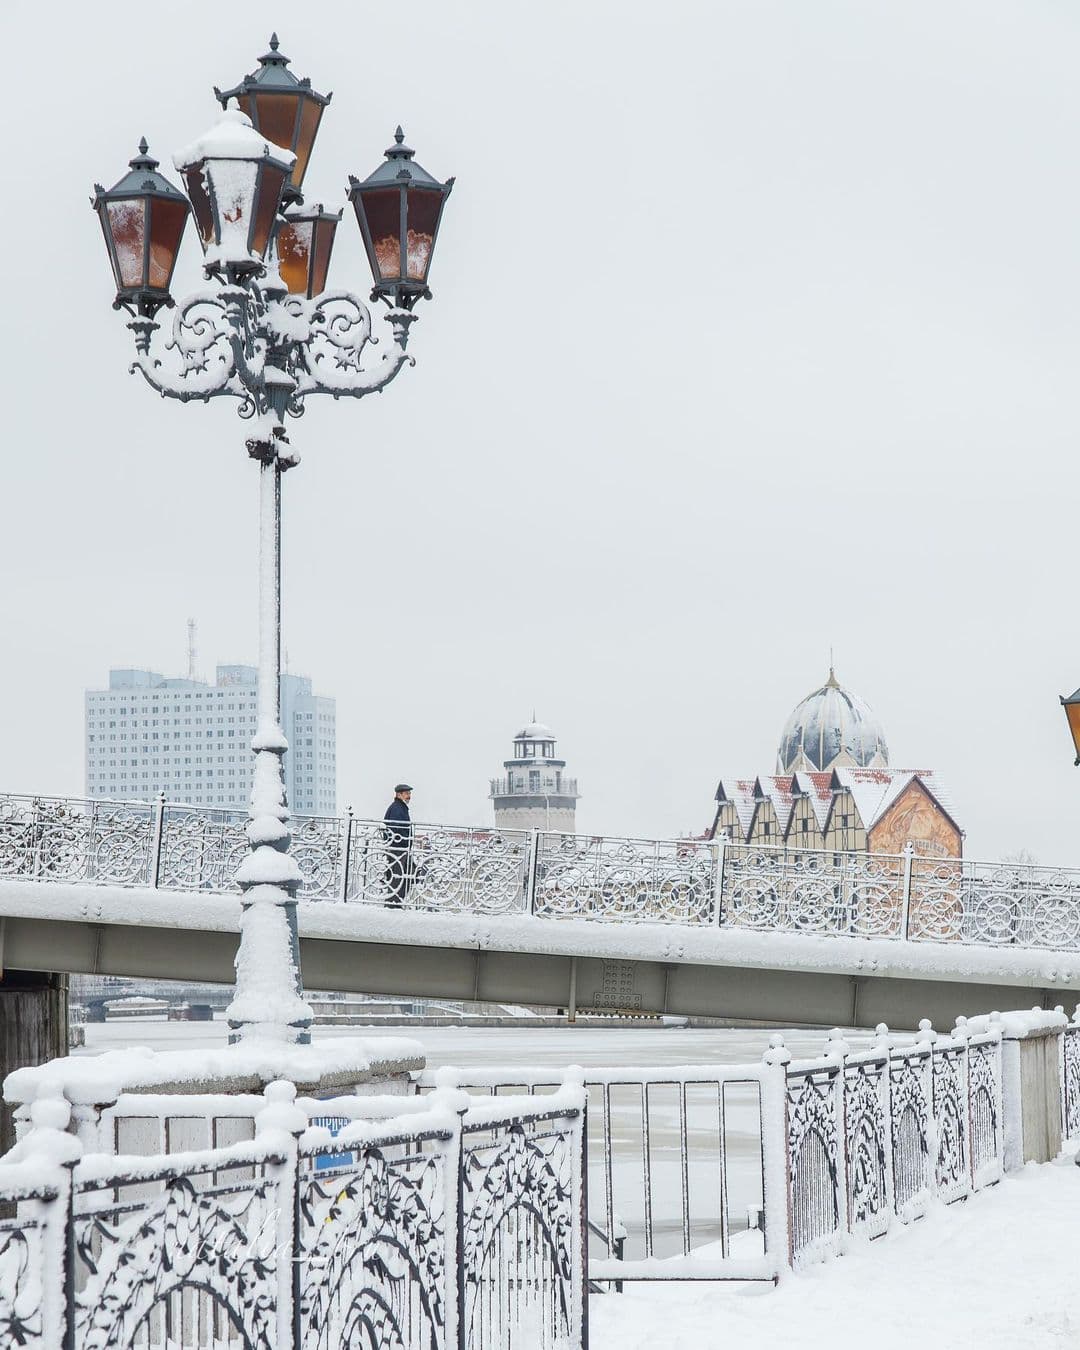 Ростуризм запускает новый этап распродажи туров по России с кешбэком 18 января